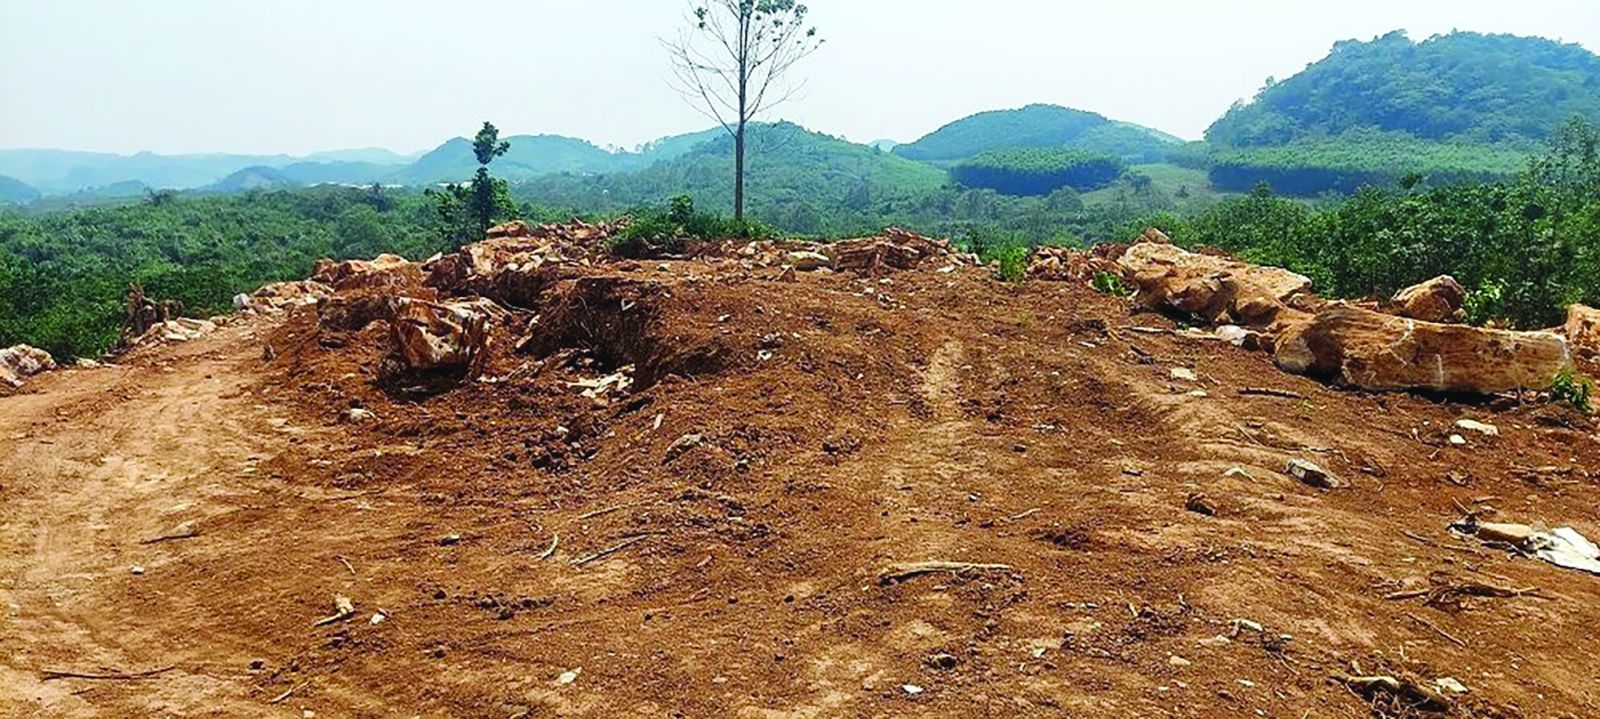  Nhiều ngọn núi bị bị san phẳng, đào bới tại huyện Quỳ Hợp, nơi được ví như một “thủ phủ” khoáng sản của tỉnh Nghệ An.